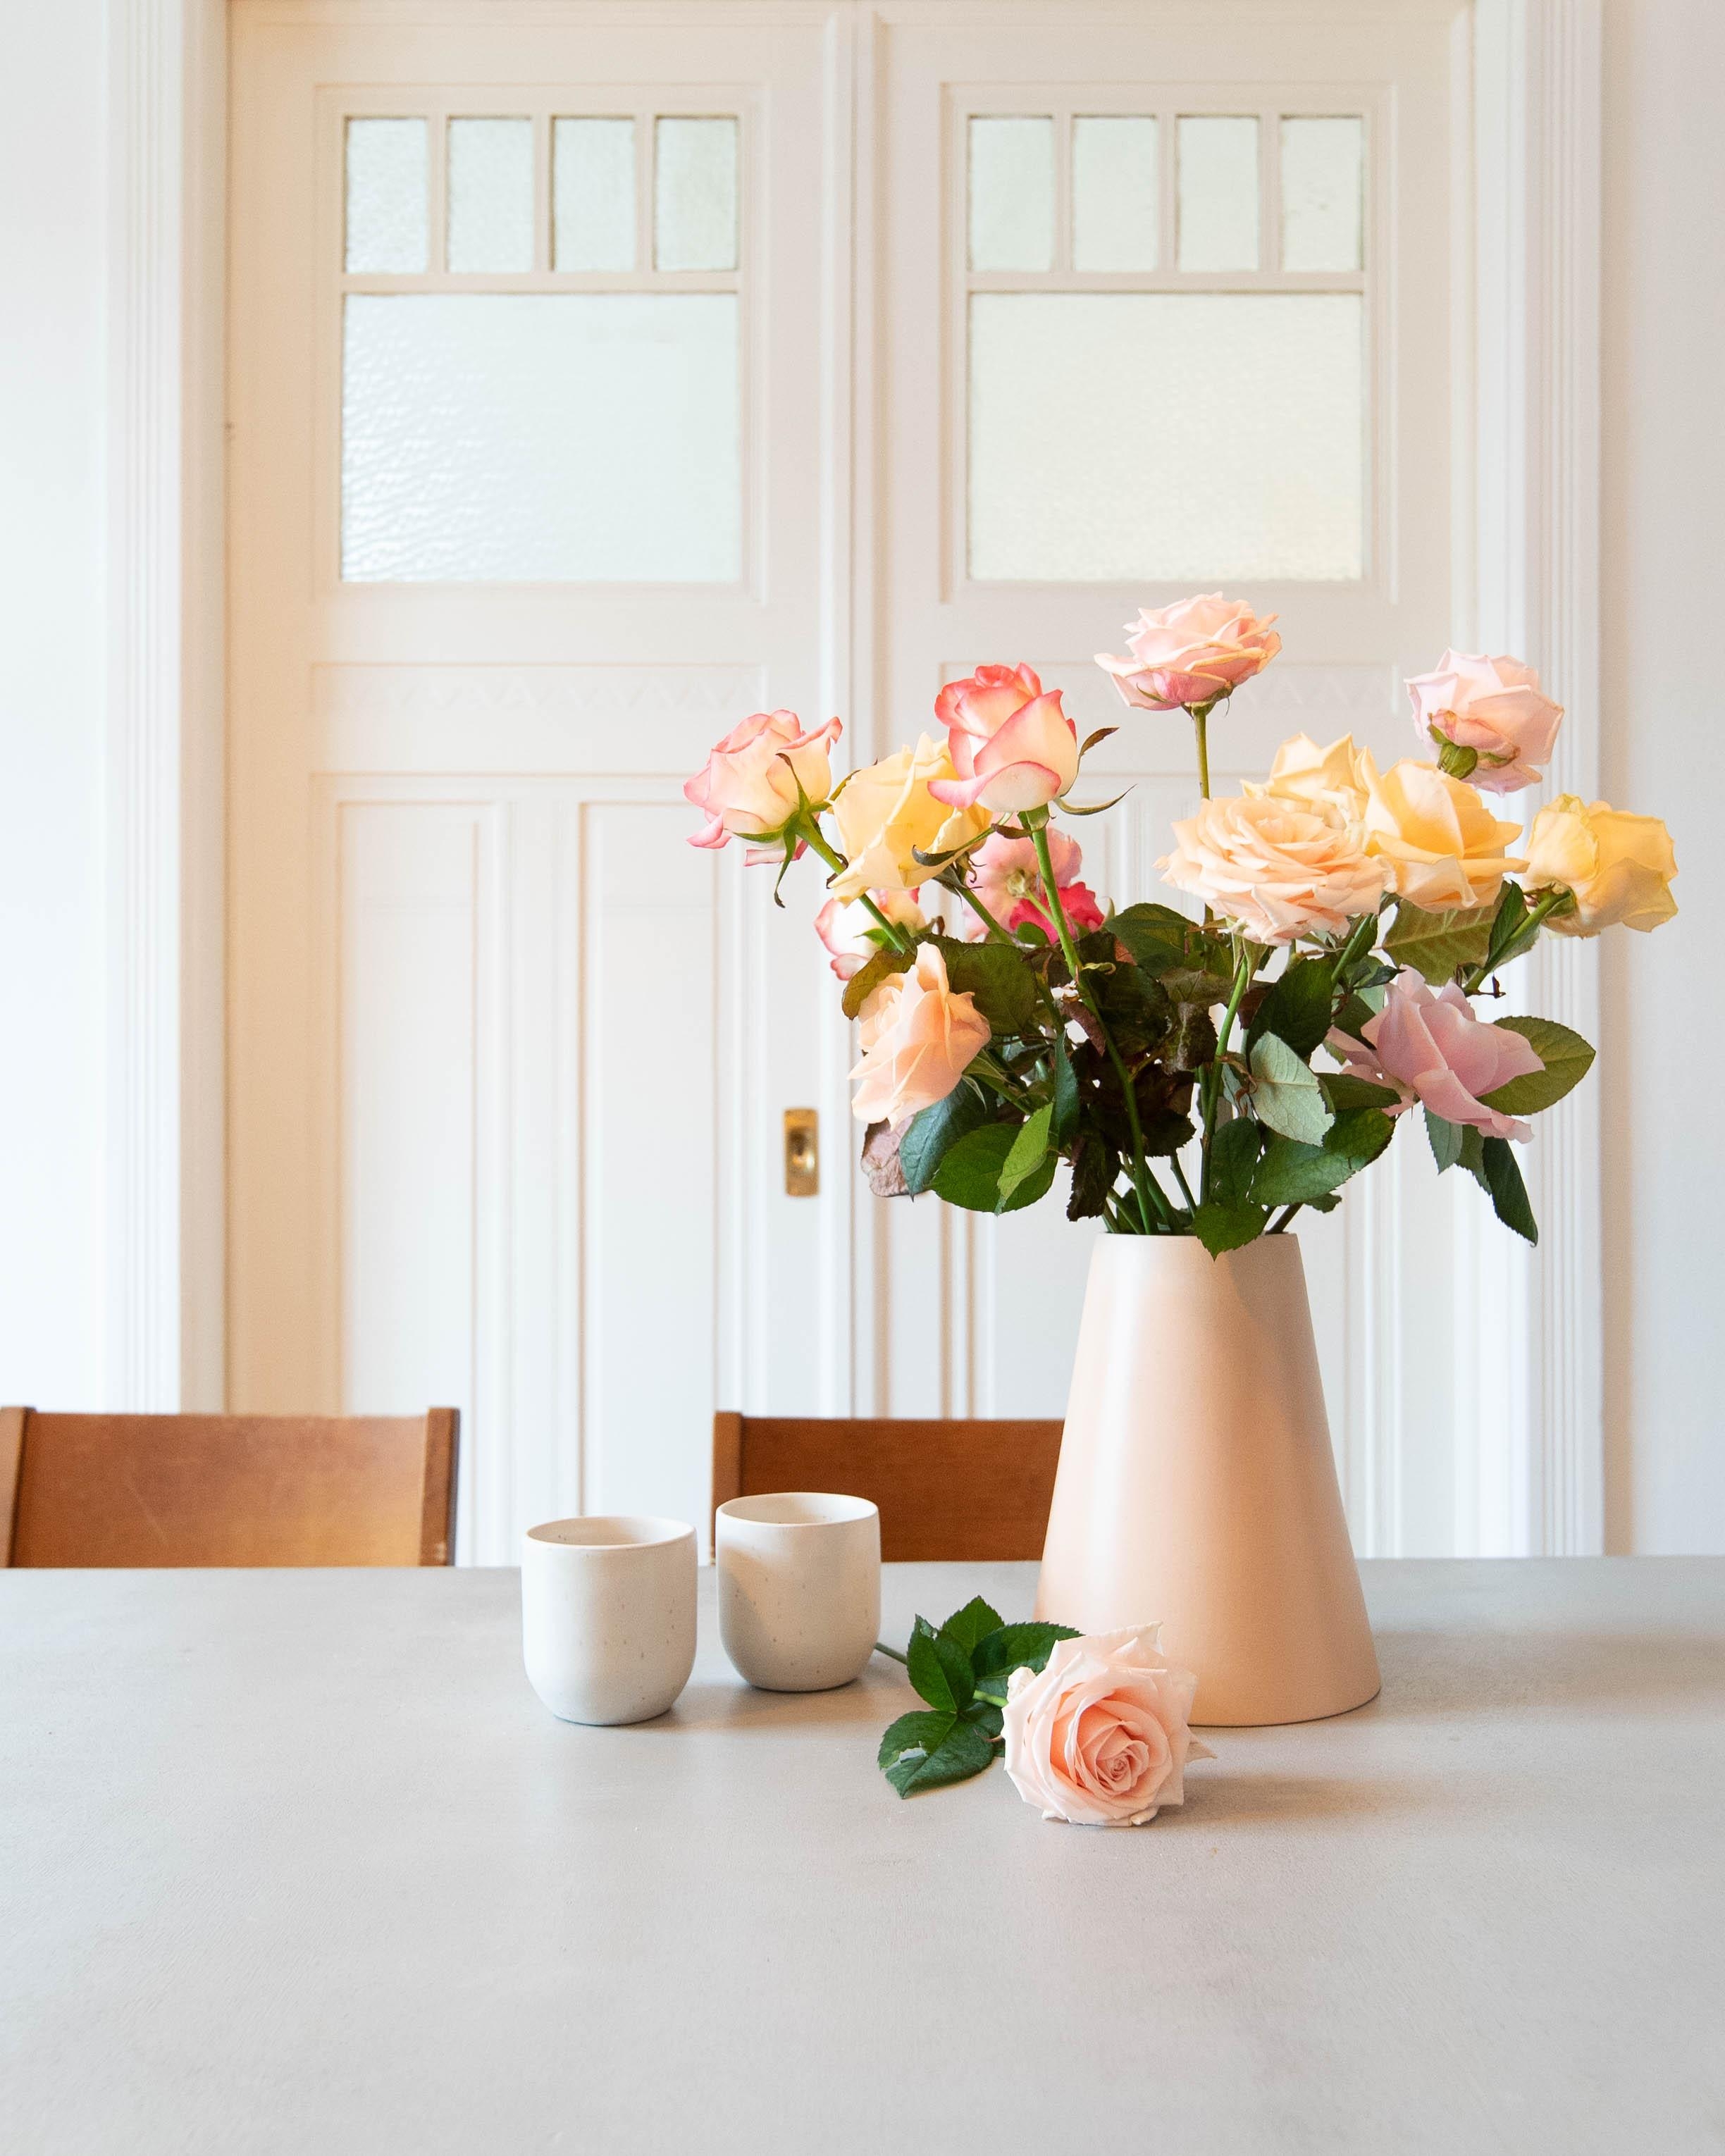 Kaffeedate mit schönen Blumen #blumen #farbenfroh #couchstyle